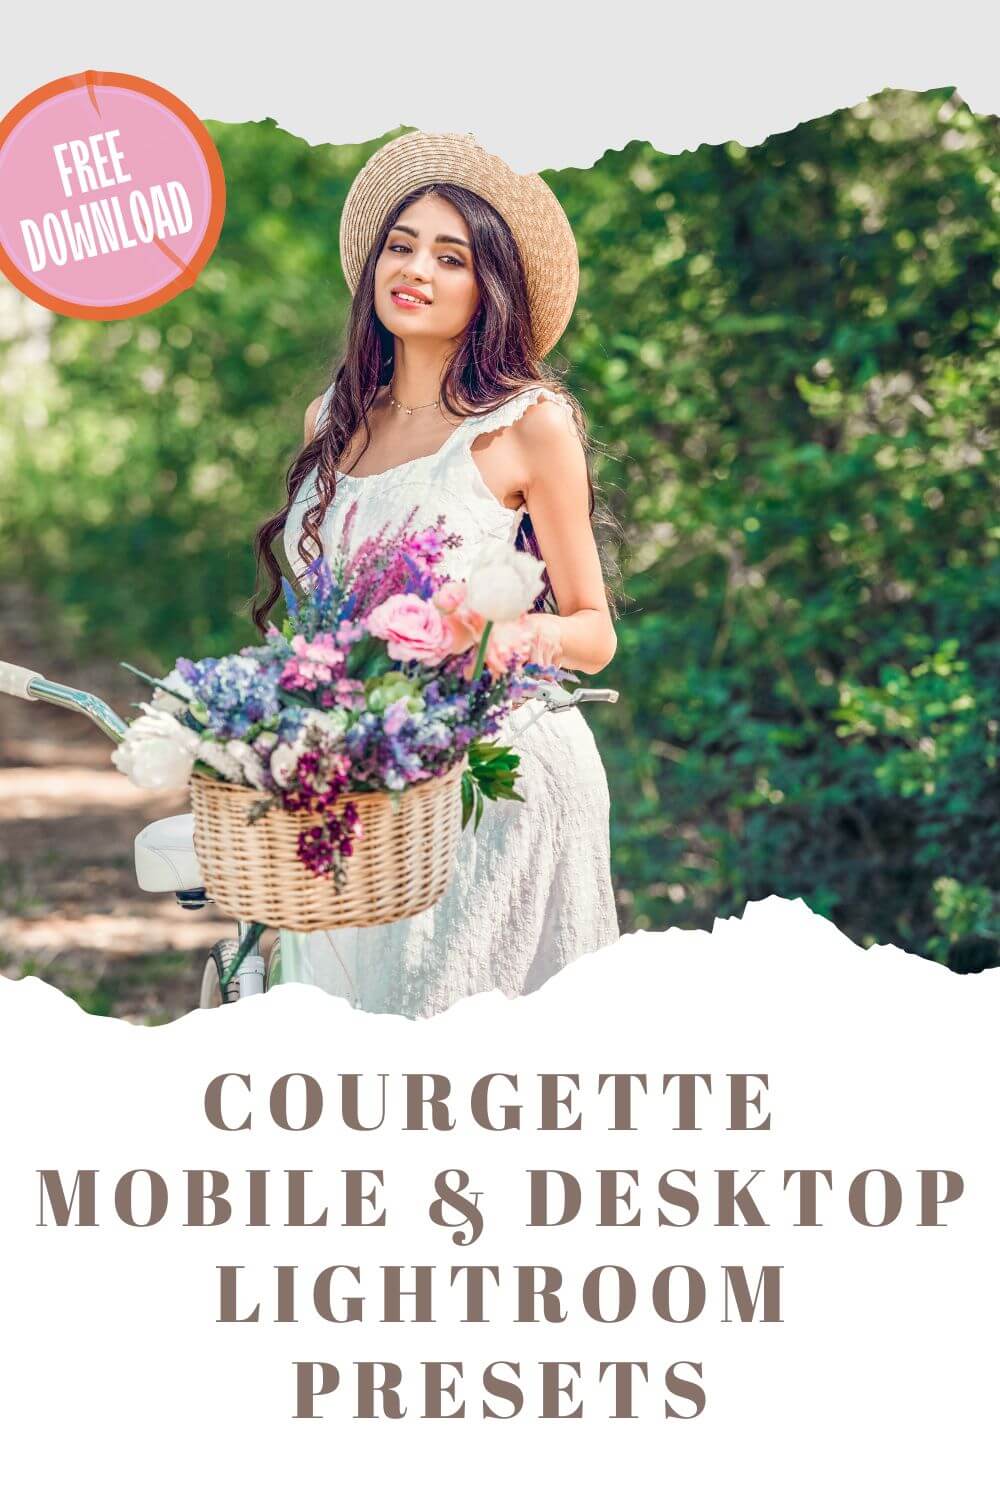 Courgette Mobile & Desktop Lightroom Presets Pinterest